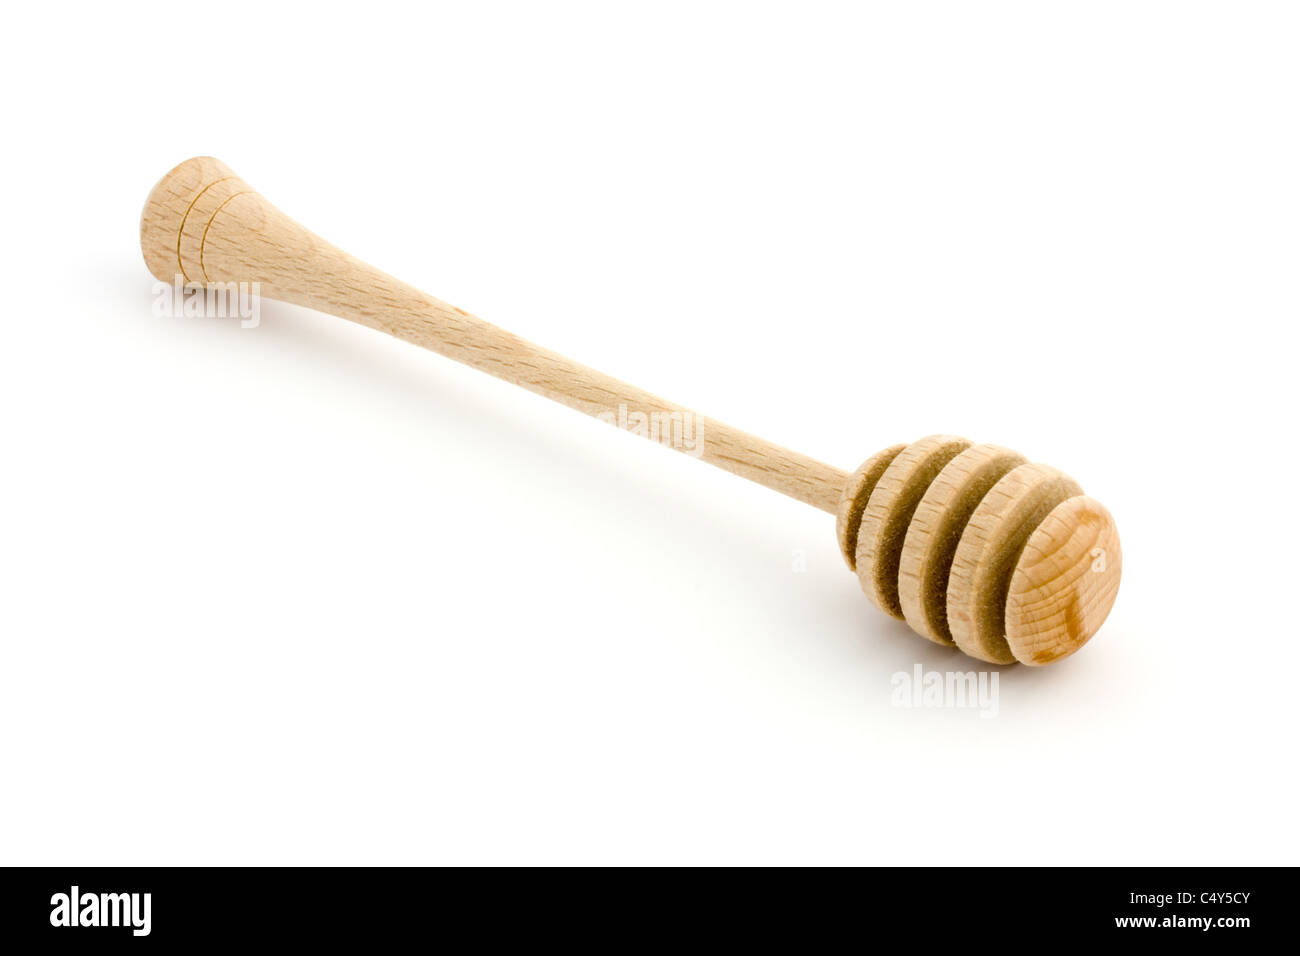 Miel de madera drizzler aislado en blanco Foto de stock